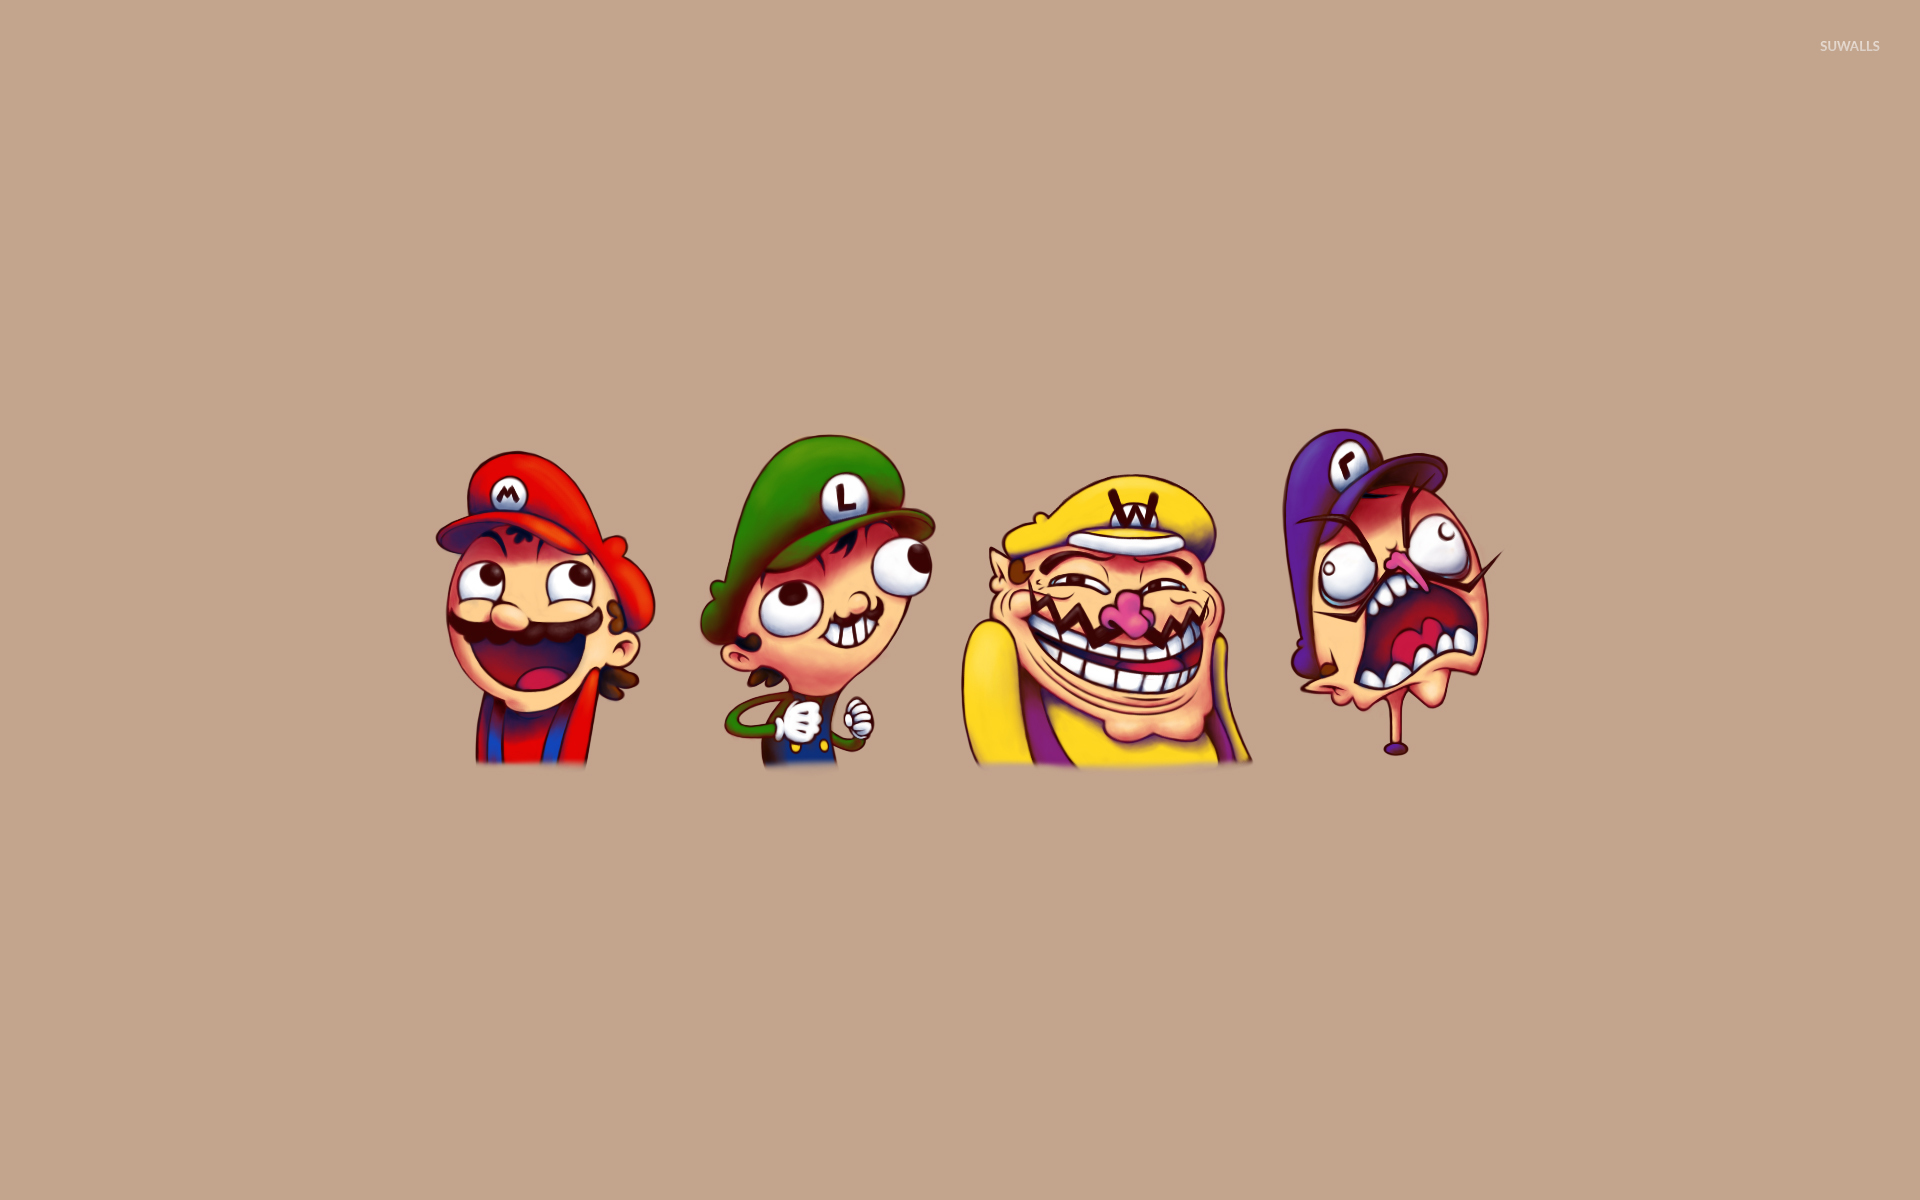 Meme Mario wallpaper - Meme wallpapers